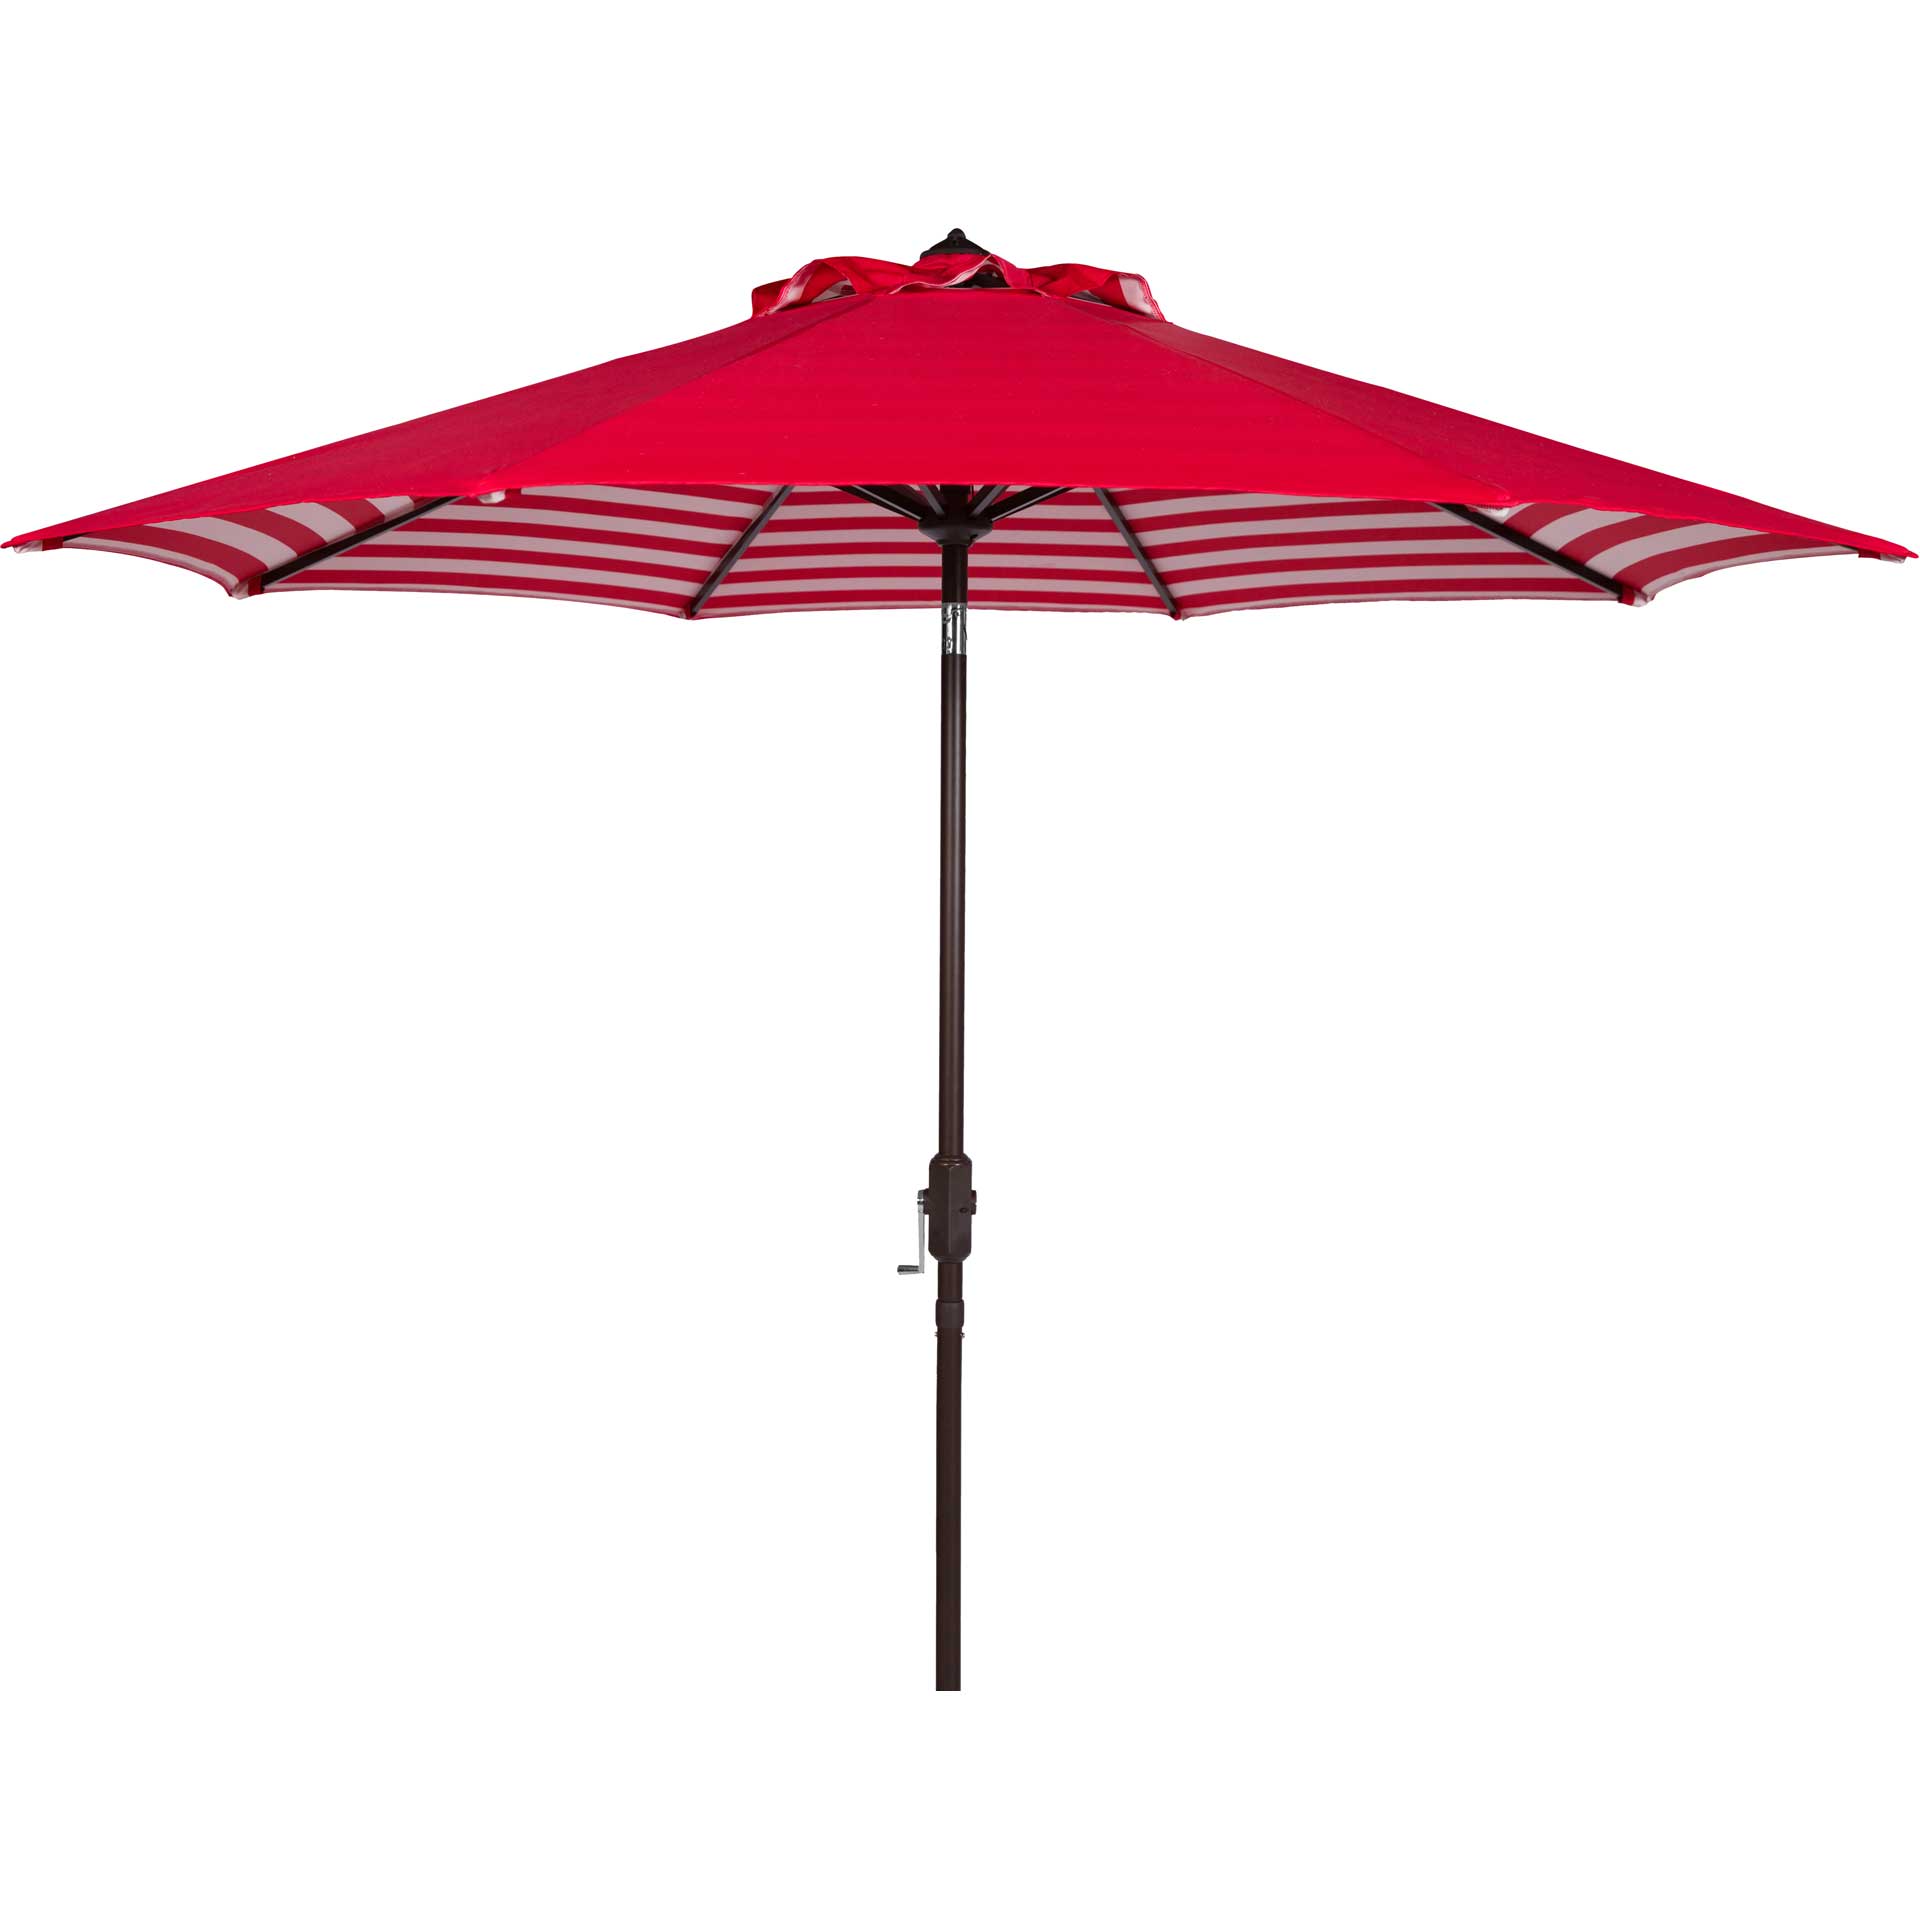 Atara Striped Outdoor Auto Tilt Umbrella Red/White